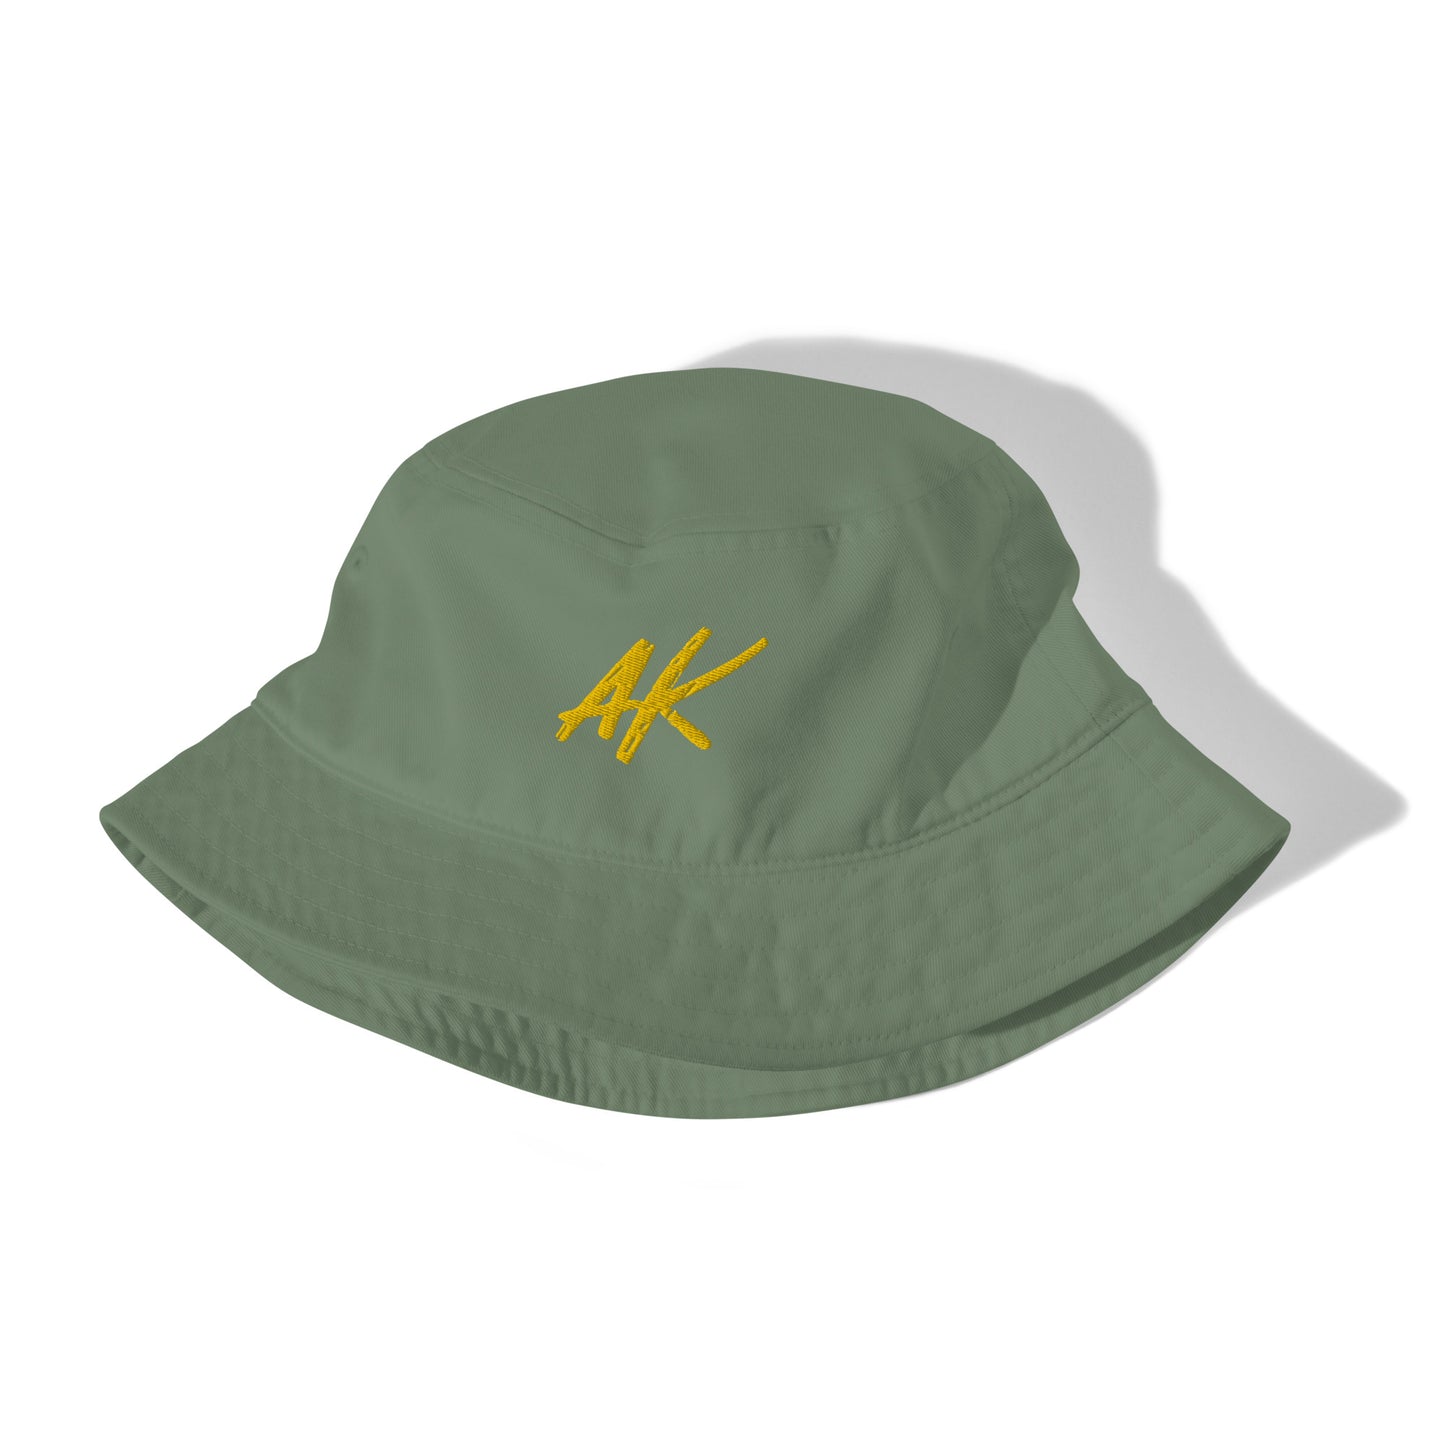 AK bucket hat (gold)